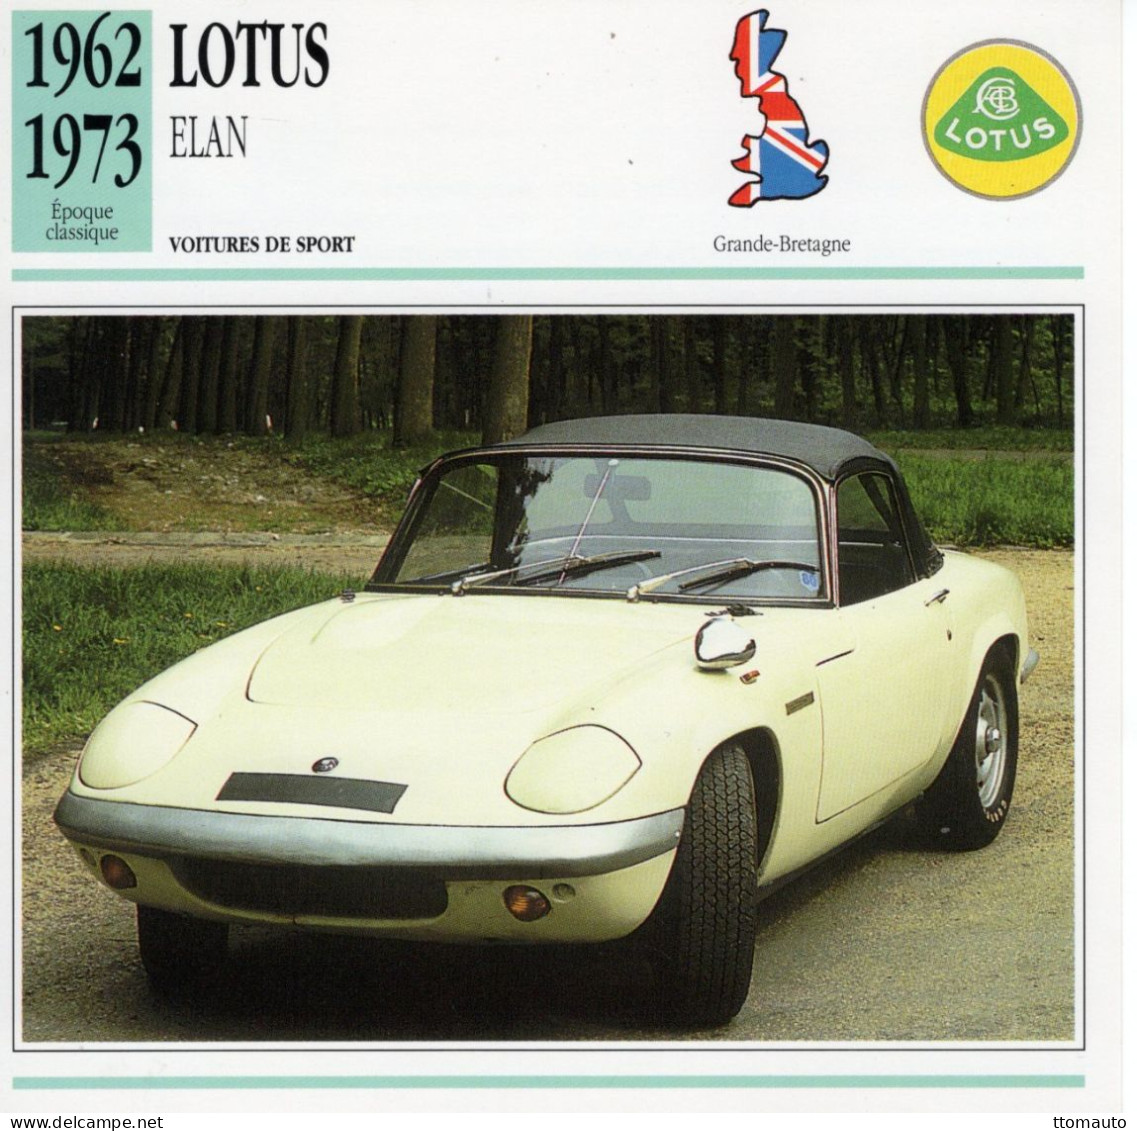 Lotus Elan -  1963 - Voiture De Sport -  Fiche Technique Automobile (GB) - Autos